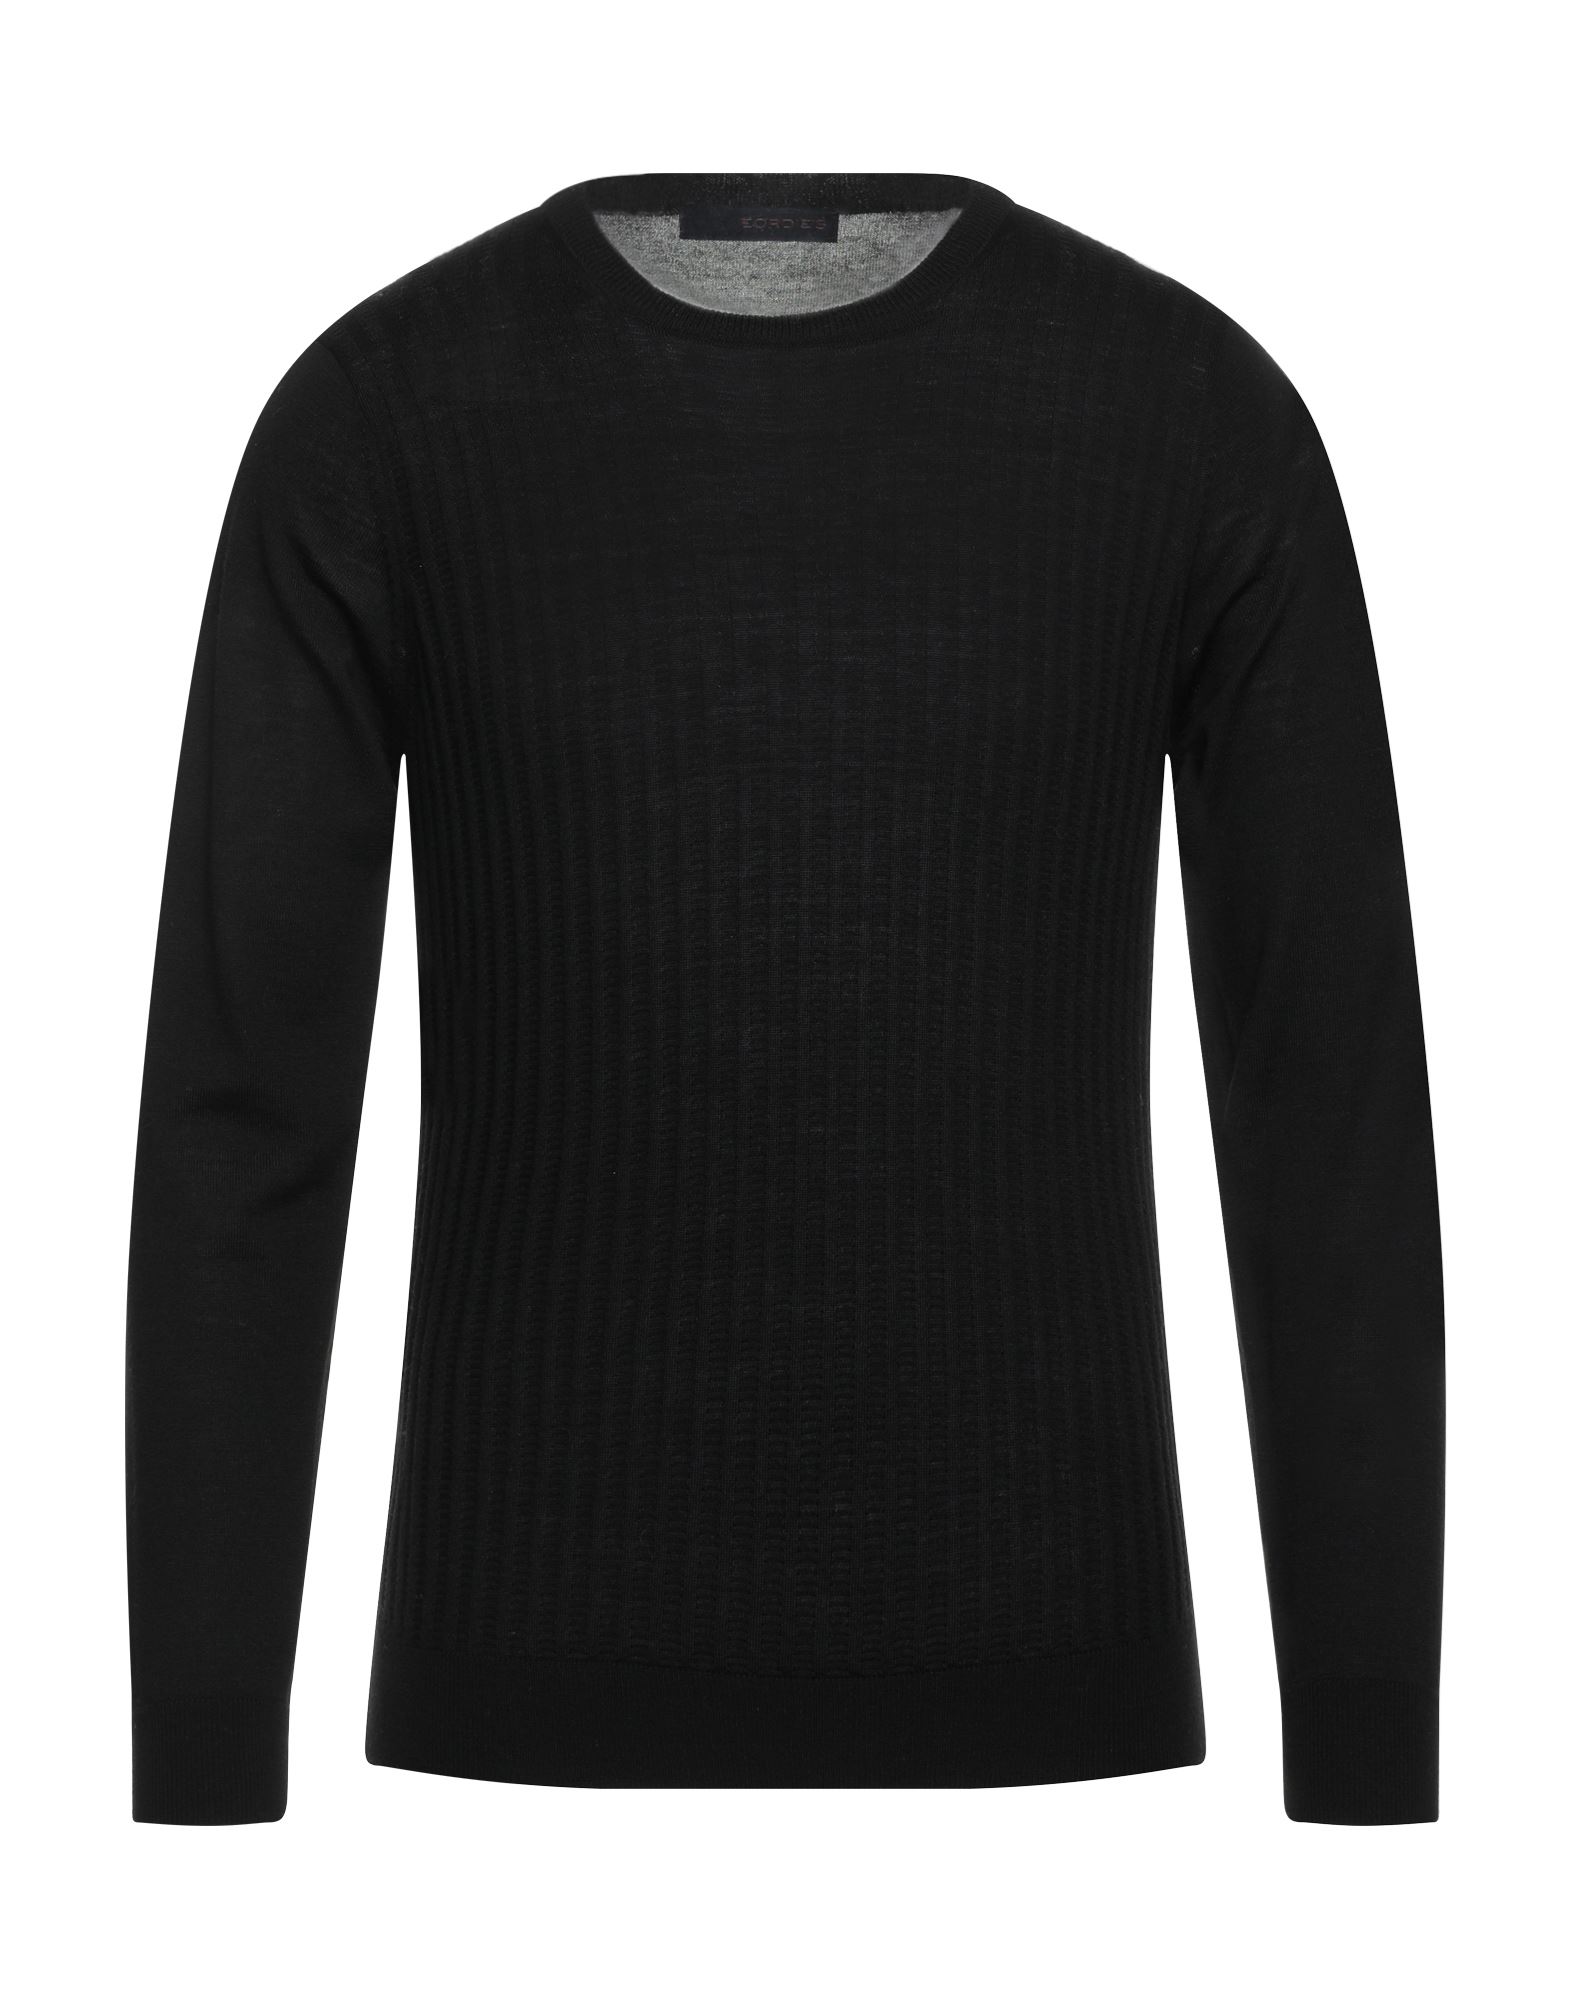 Jeordie's Sweaters In Black